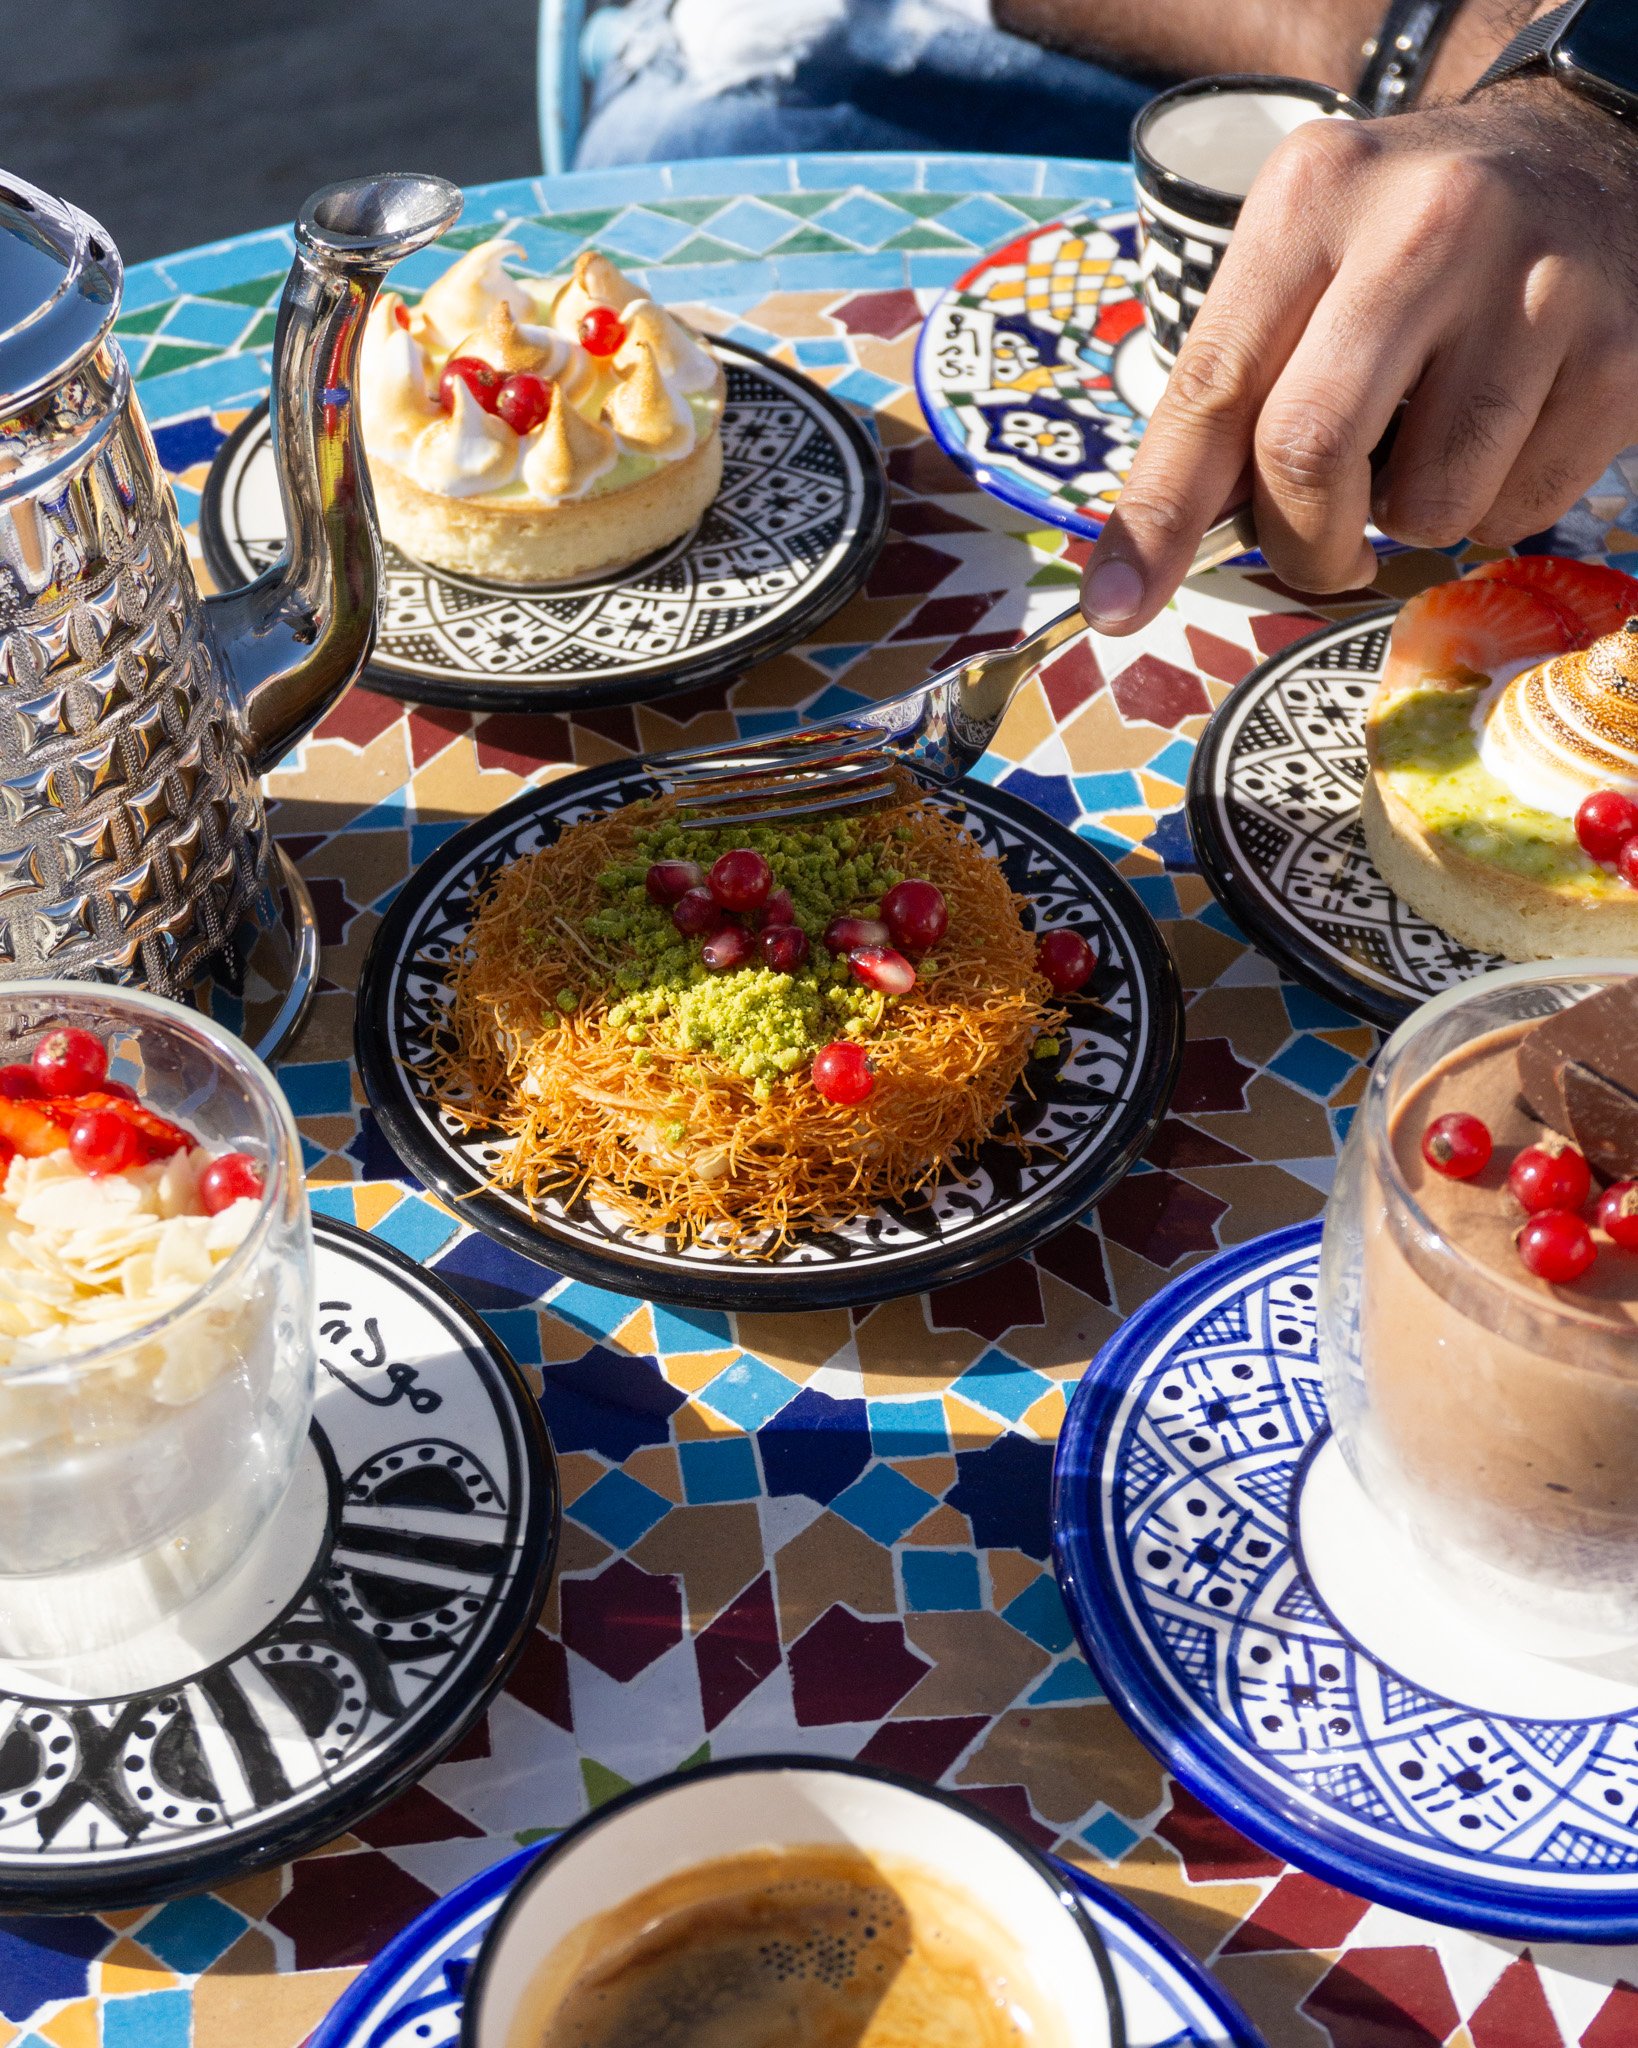 Liebe auf den ersten Biss. 💖 Hast du schon unsere hausgemachten Desserts probiert? Von Knafeh bis Kuchen &ndash; da ist f&uuml;r alle etwas dabei. 😋

#beimoudi #kunsthauszurich #mezzezurich #zurich #zurichcity #knafeh #kaffeezurich #cafezurich #zur